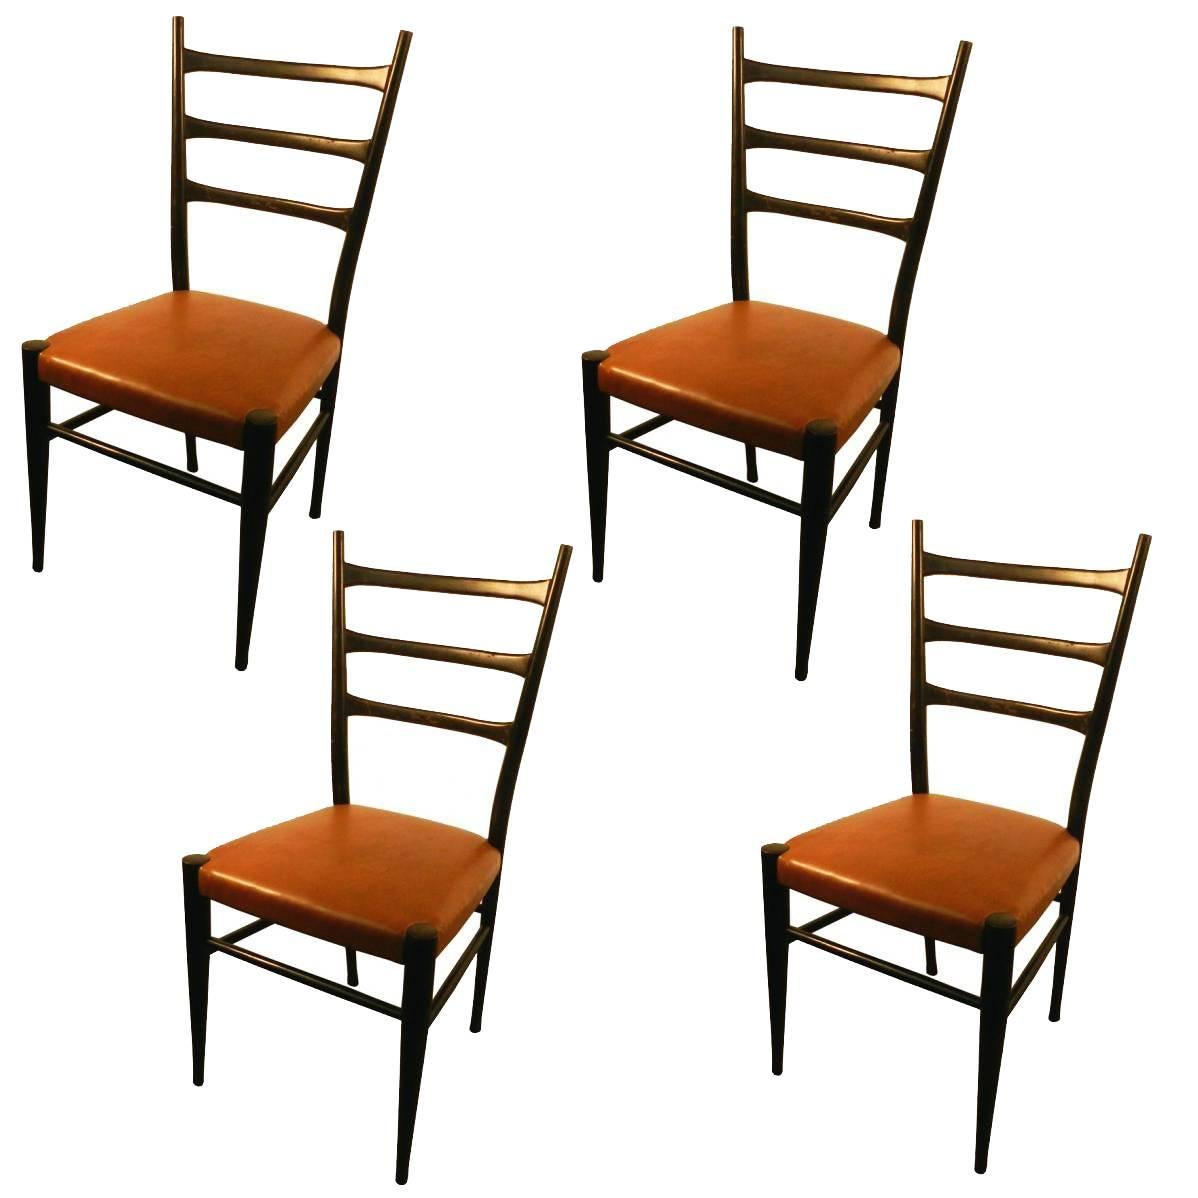 Stühle im italienischen Stil, ca. 1950–1960